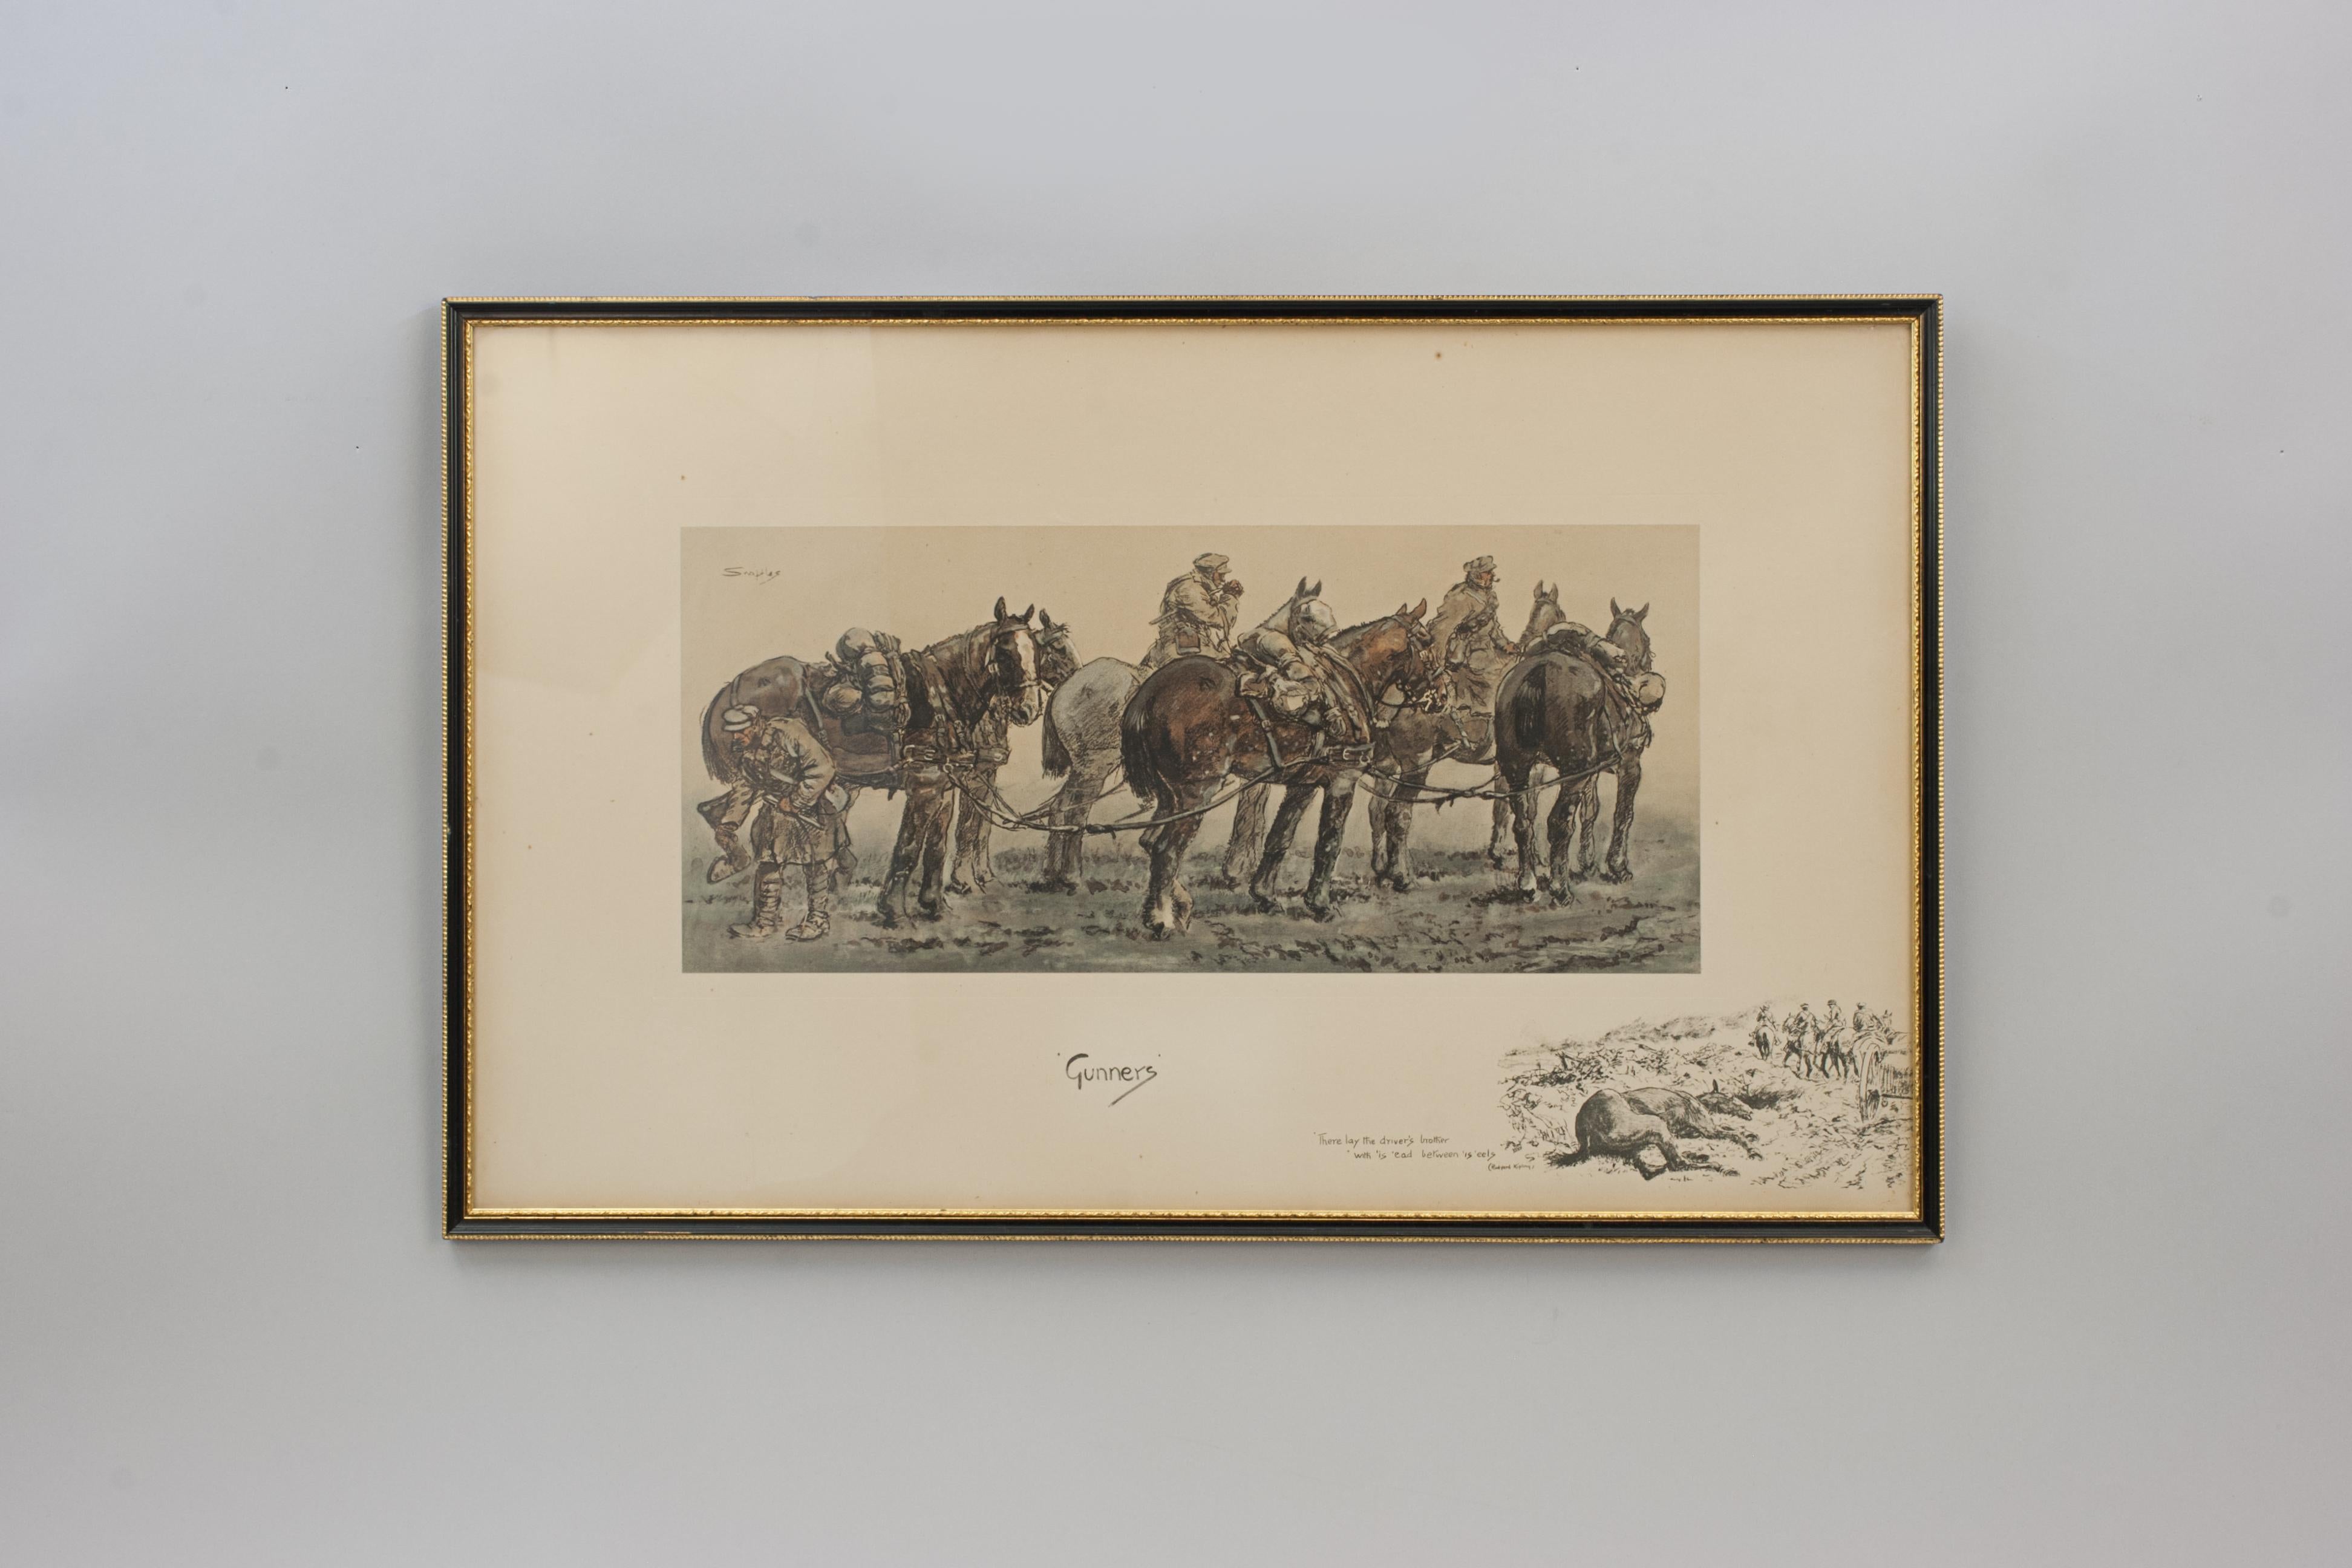 Trensen WWI Militärdruck, Kanoniere.
Eine gute Snaffles WWI Militärlithographie mit Handveredelung mit dem Titel 'Gunners'. Das Bild zeigt ein Gespann mit sechs Pferden und drei Fahrern, von denen zwei rauchen und einer einen Pferdehuf untersucht.